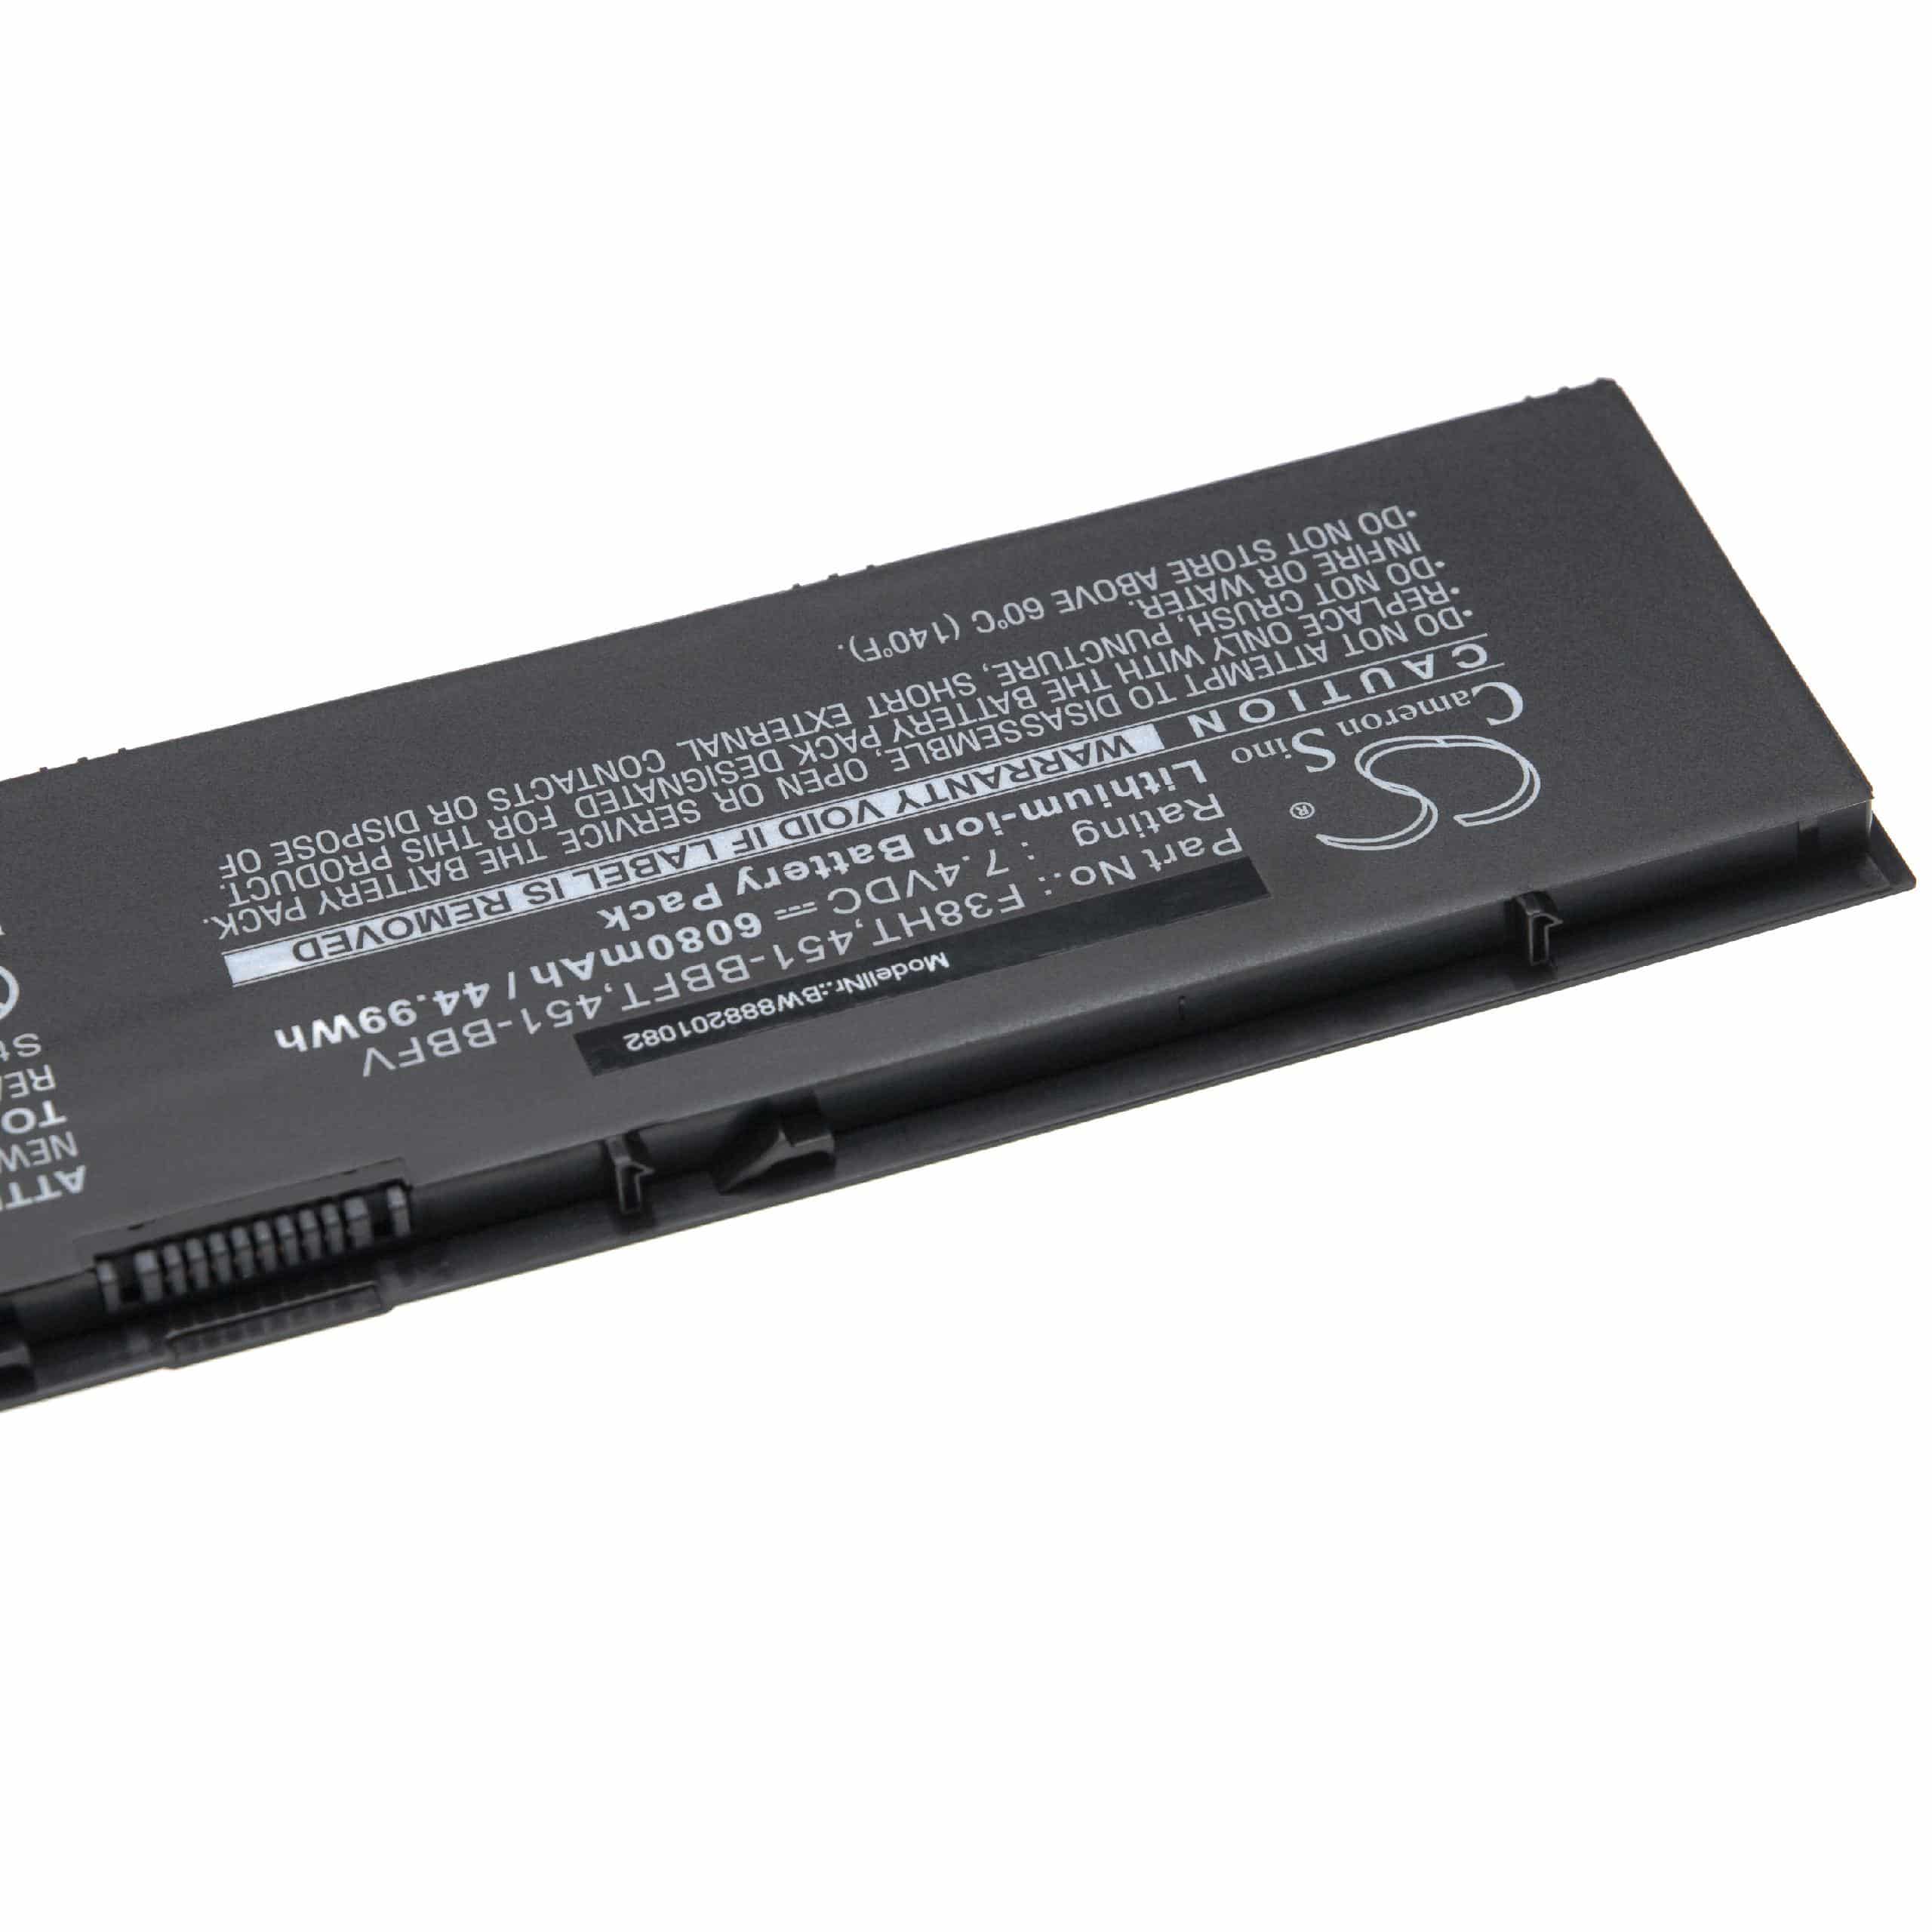 Batería reemplaza Dell F38HT, 451-BBFY, 34GKR, 451-BBFT para notebook Dell - 6080 mAh 7,4 V Li-Ion negro